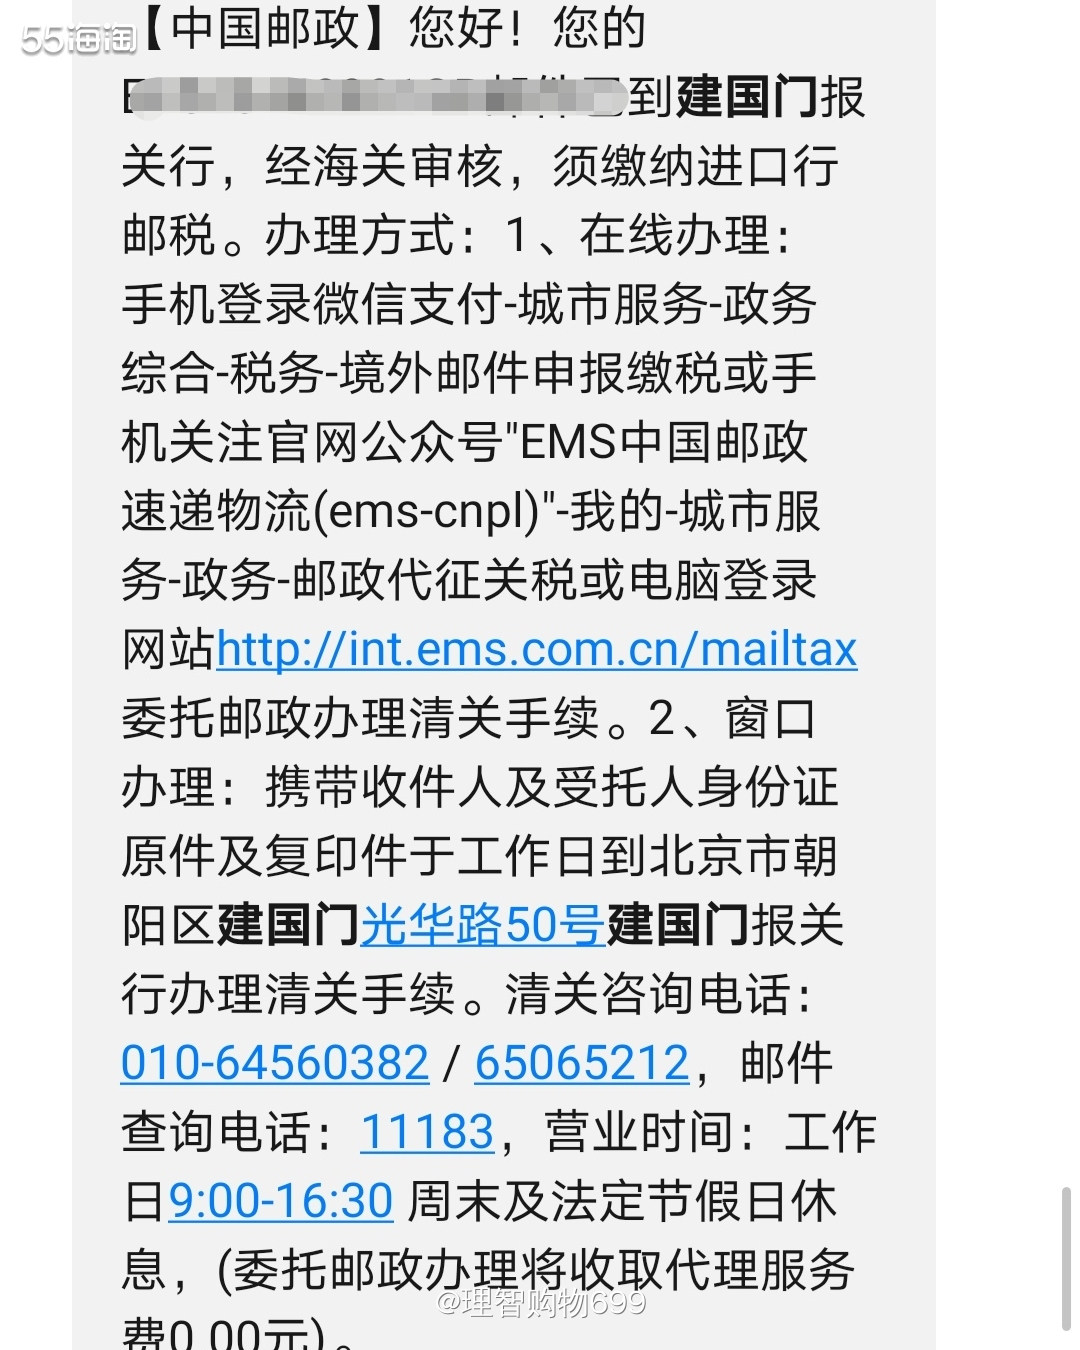 线下缴税注意事项  ♥以在北京建国门邮局缴税为例。  🏷工